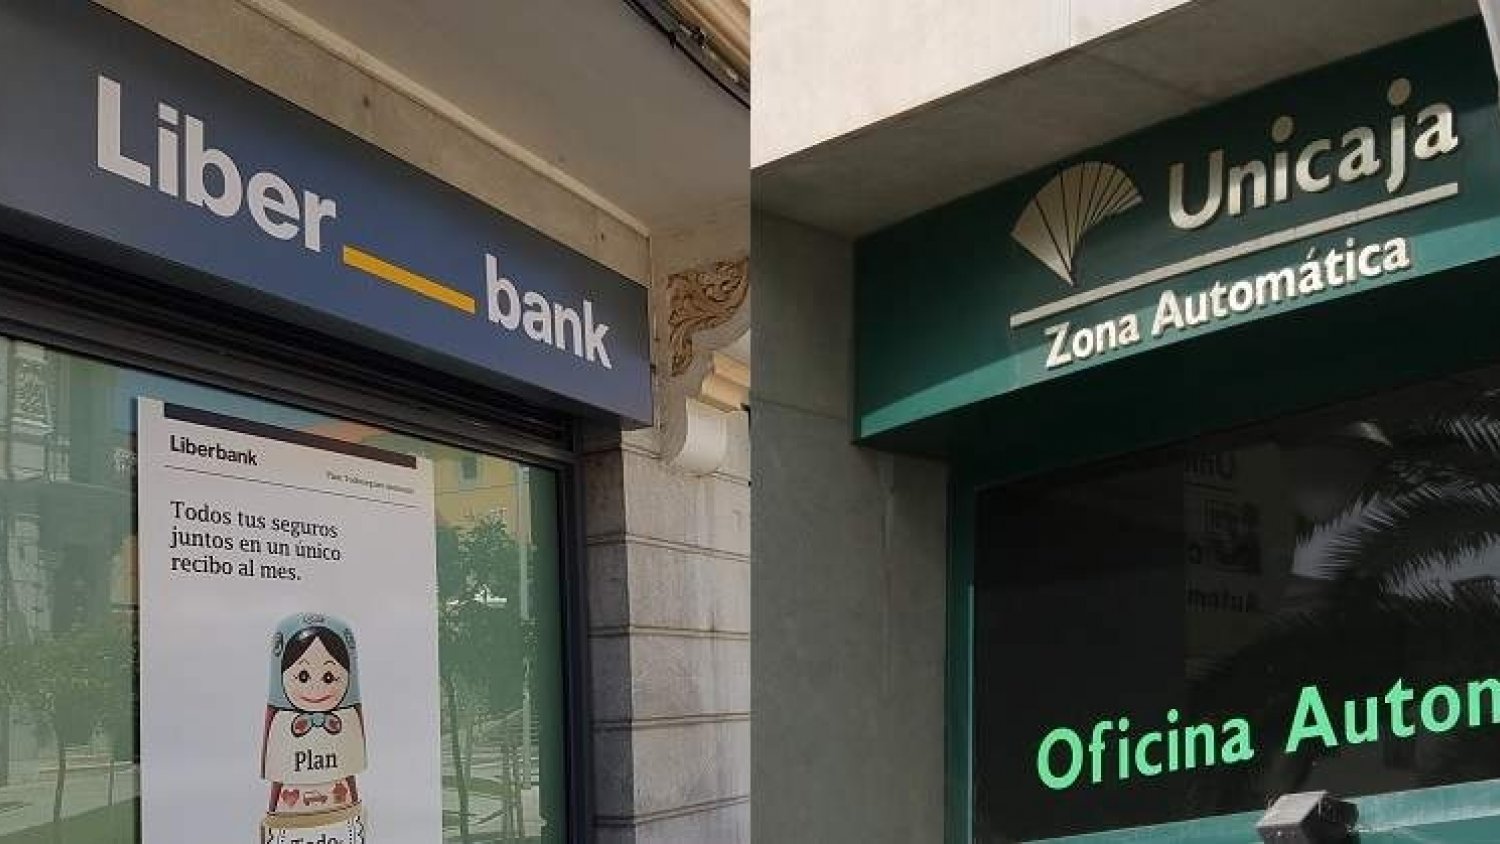 Unicaja Banco y Liberbank sellan mañana su fusión creando el quinto banco del mercado español